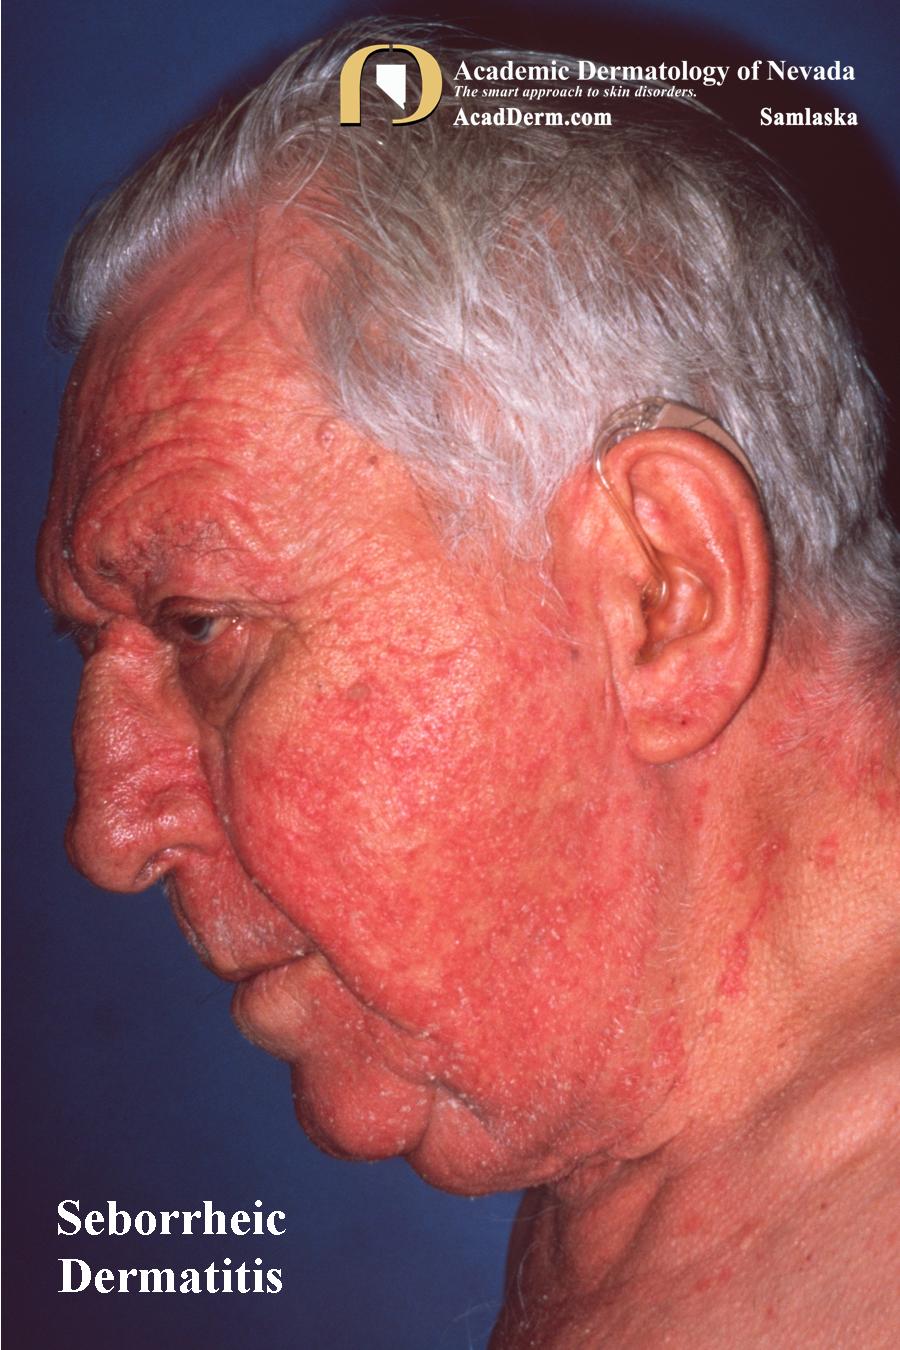 Seborrheic Dermatitis: Dandruff, Cradle Cap...